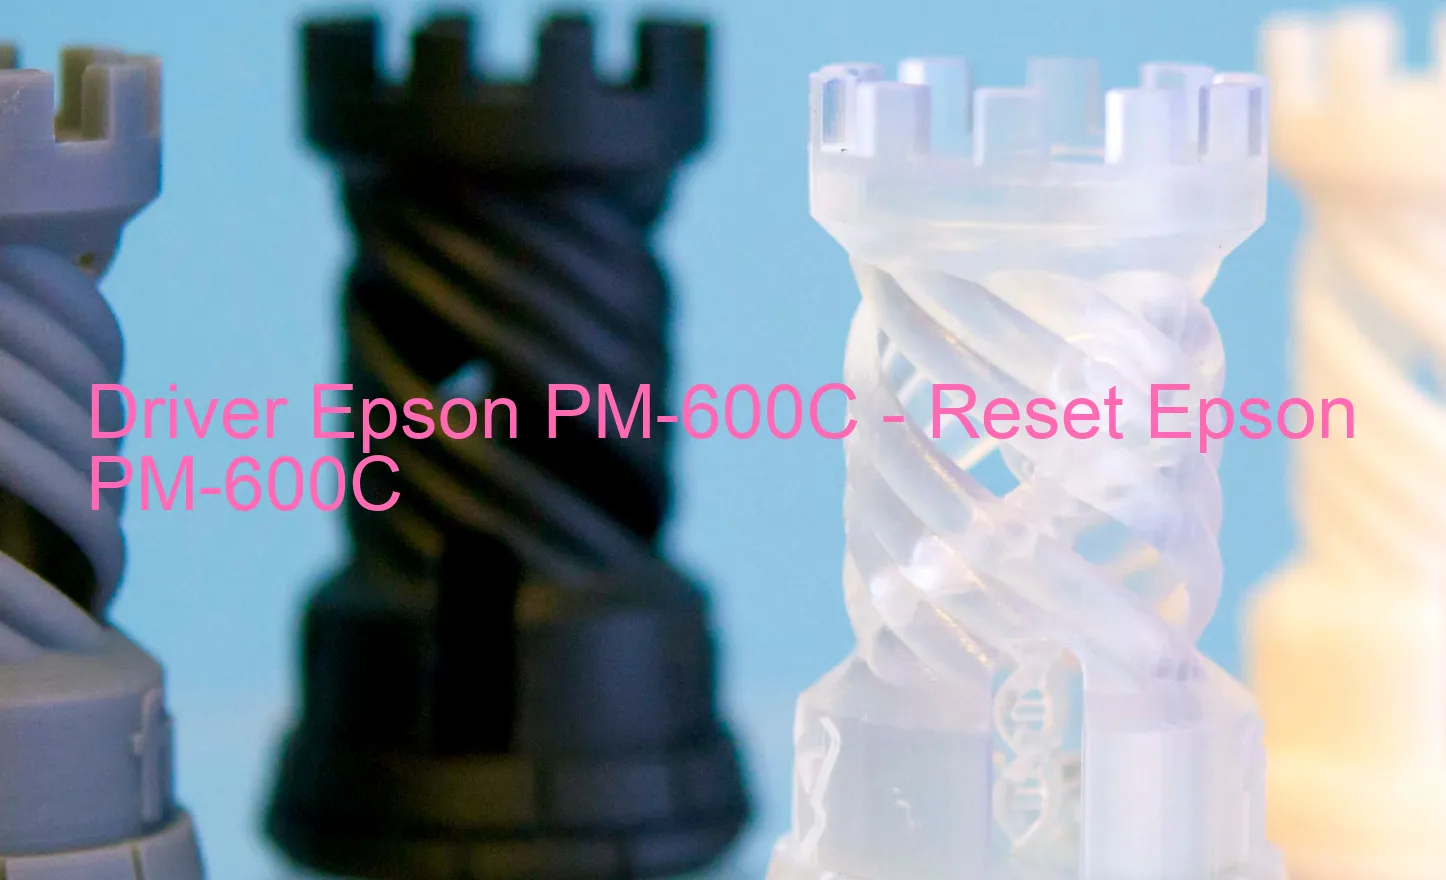 Epson PM-600Cのドライバー、Epson PM-600Cのリセットソフトウェア